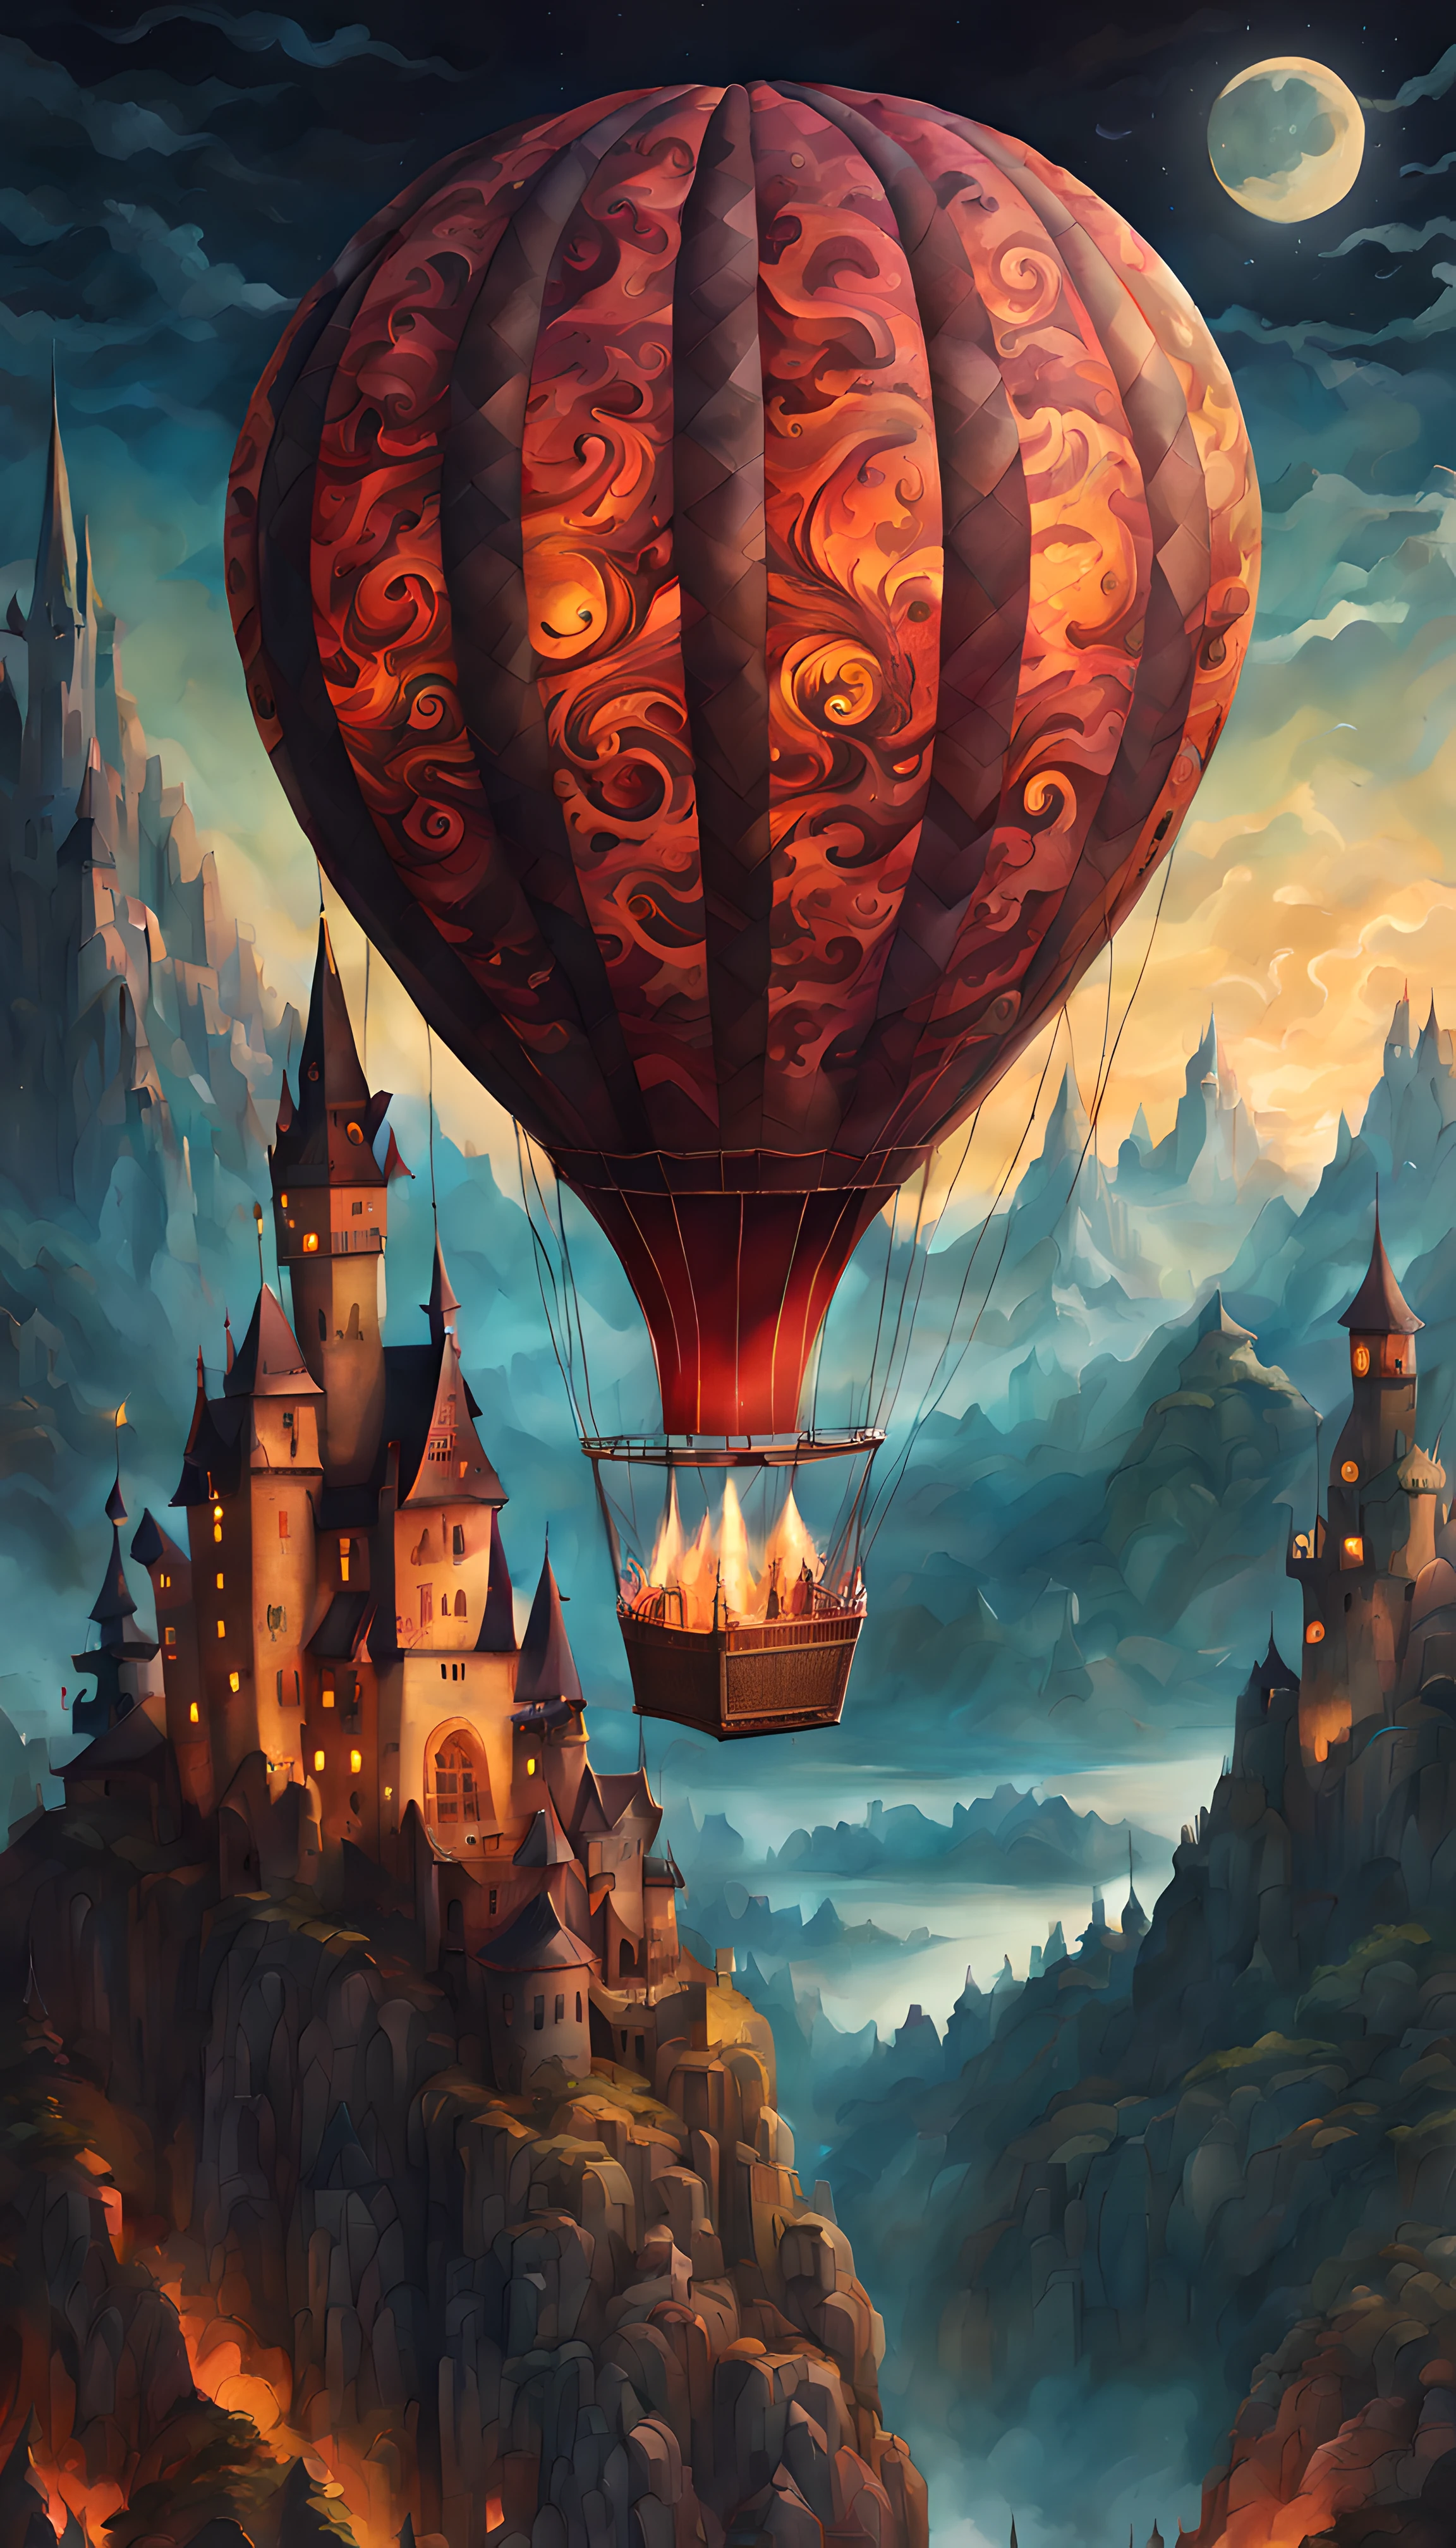 (Эпический рисунок на бумаге) из (большой) воздушный шар (с легендарным драконьим принтом:1.3), Романтические волшебные потоки, звездная лунная ночь, Готический замок, горы, объемное освещение